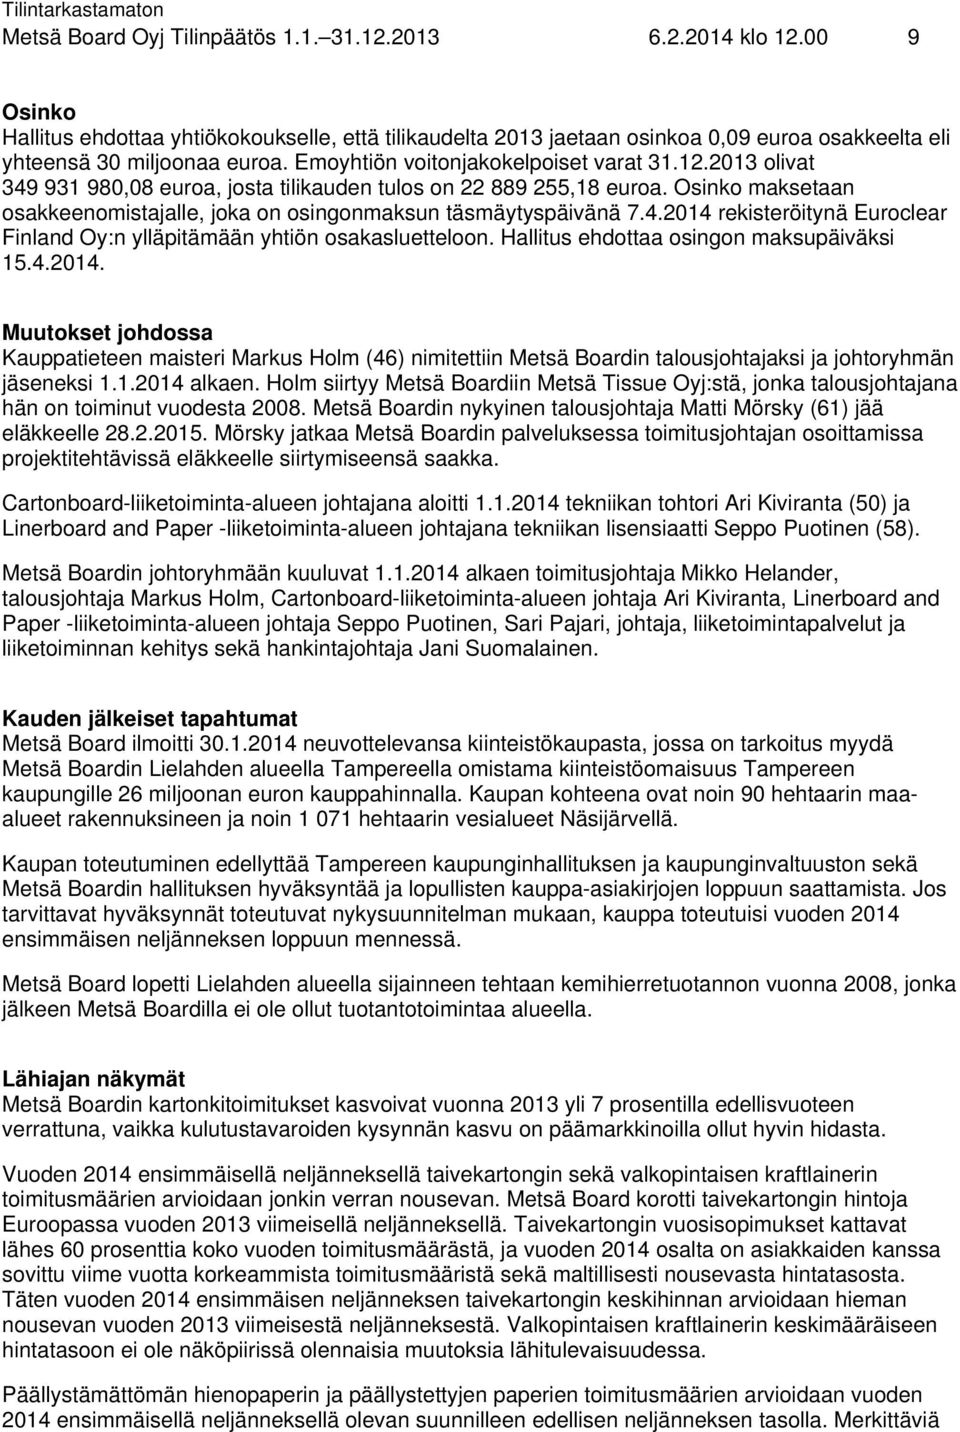 2013 olivat 349 931 980,08 euroa, josta tilikauden tulos on 22 889 255,18 euroa. Osinko maksetaan osakkeenomistajalle, joka on osingonmaksun täsmäytyspäivänä 7.4.2014 rekisteröitynä Euroclear Finland Oy:n ylläpitämään yhtiön osakasluetteloon.